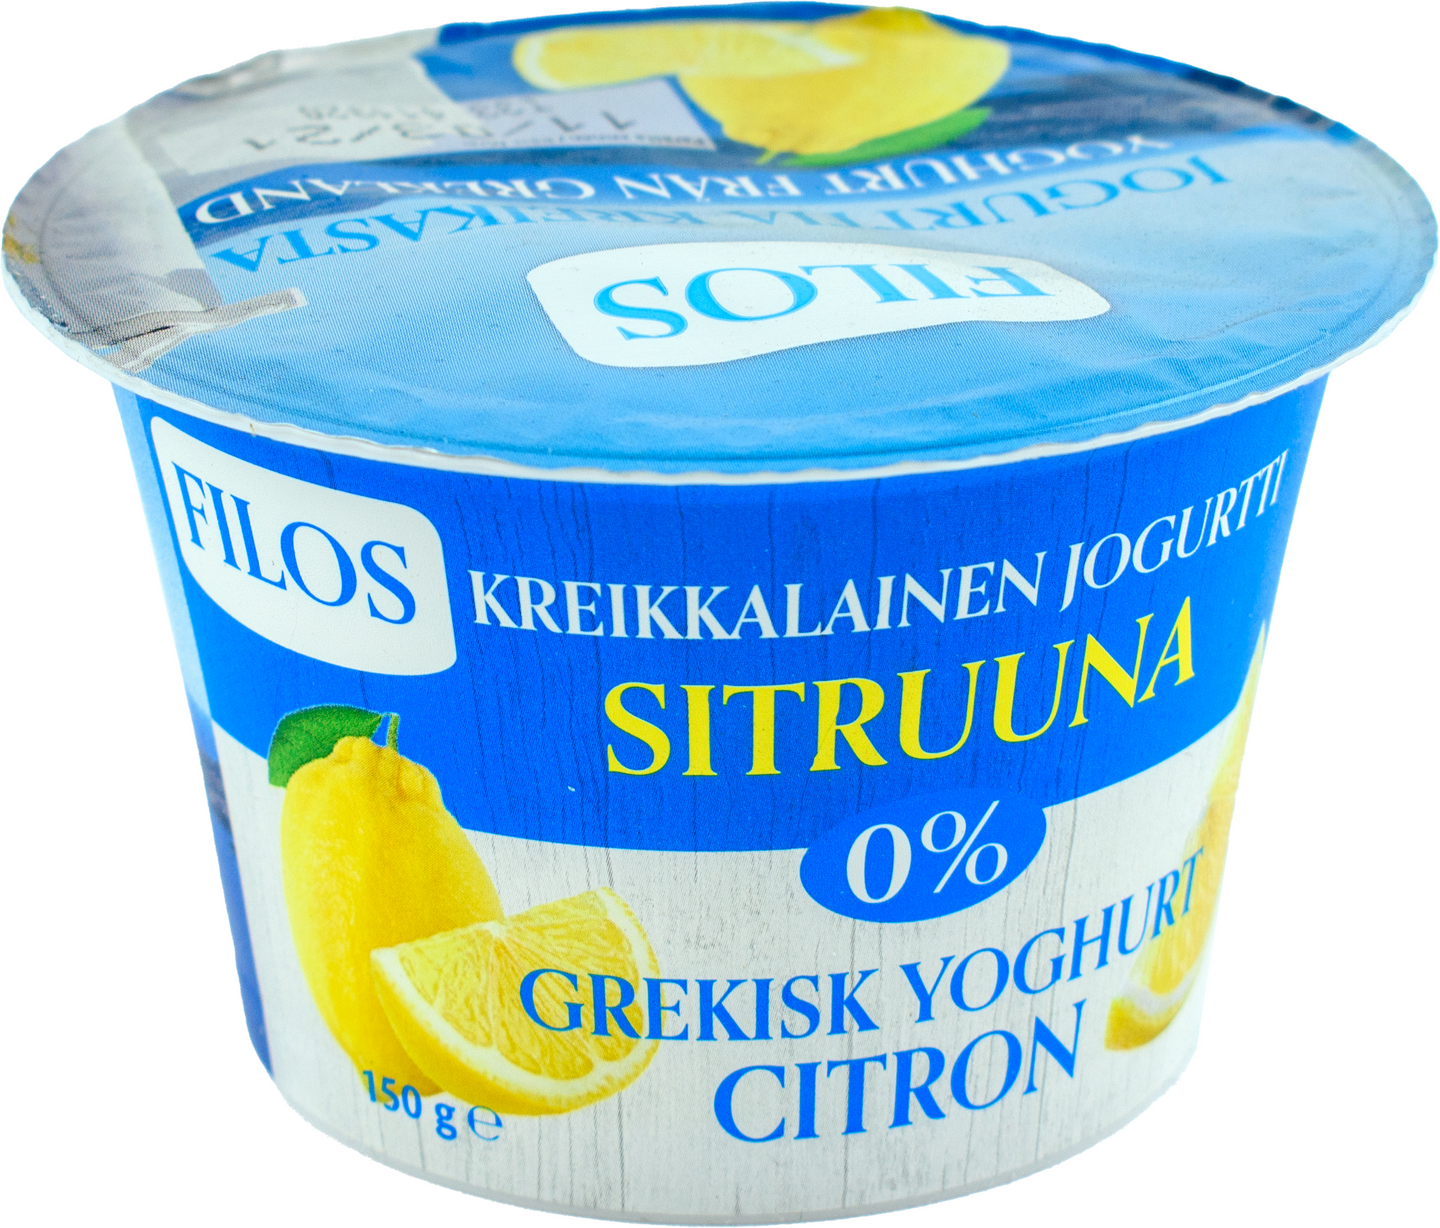 Filos kreikkalainen jogurtti 150g 0% sitruuna